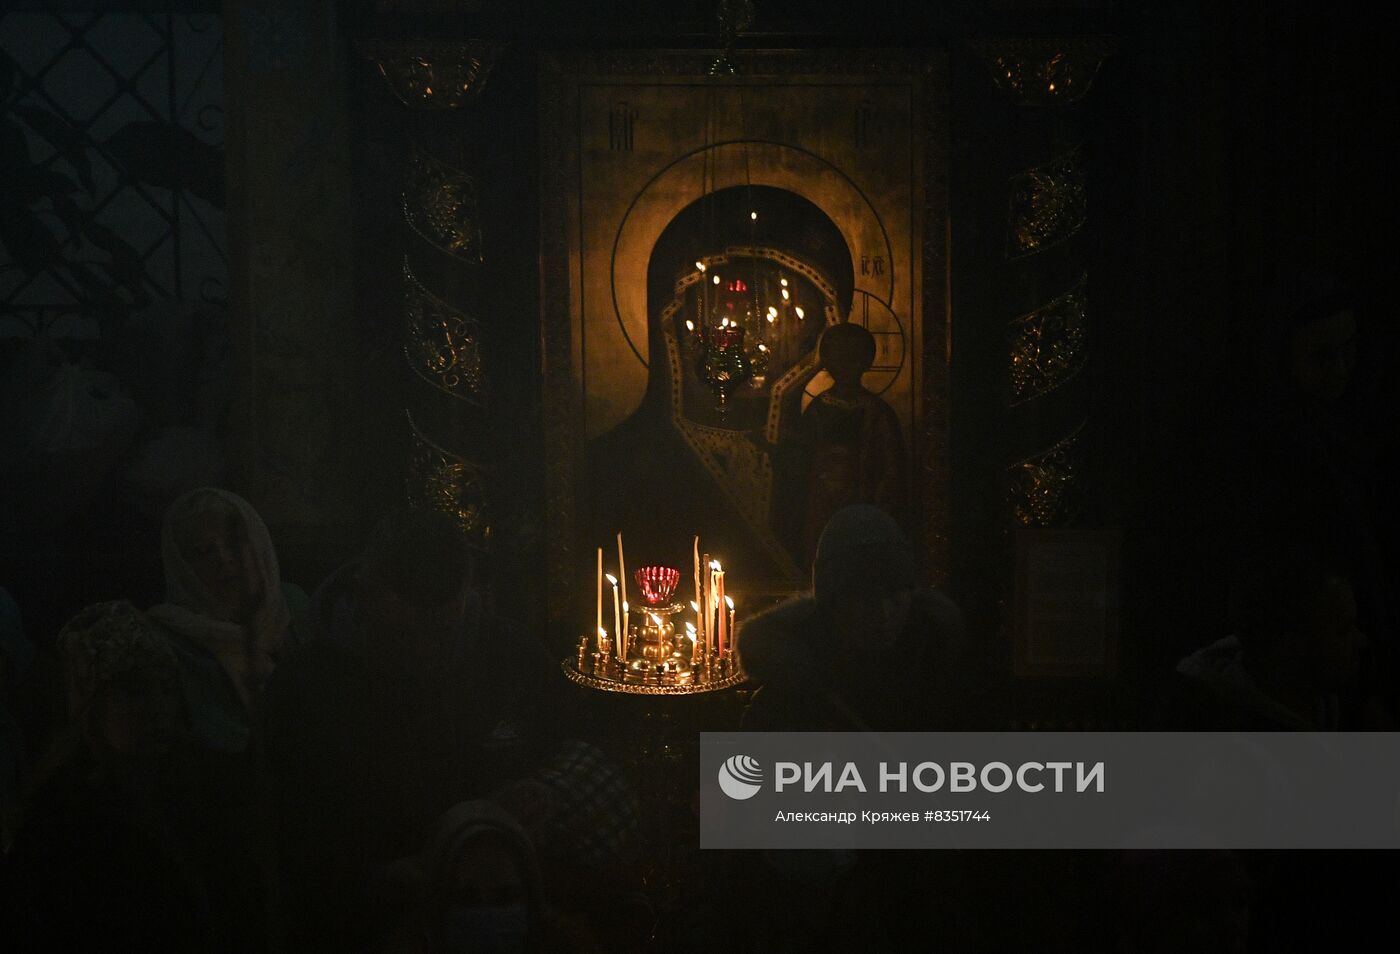 Празднование Рождества Христова в России